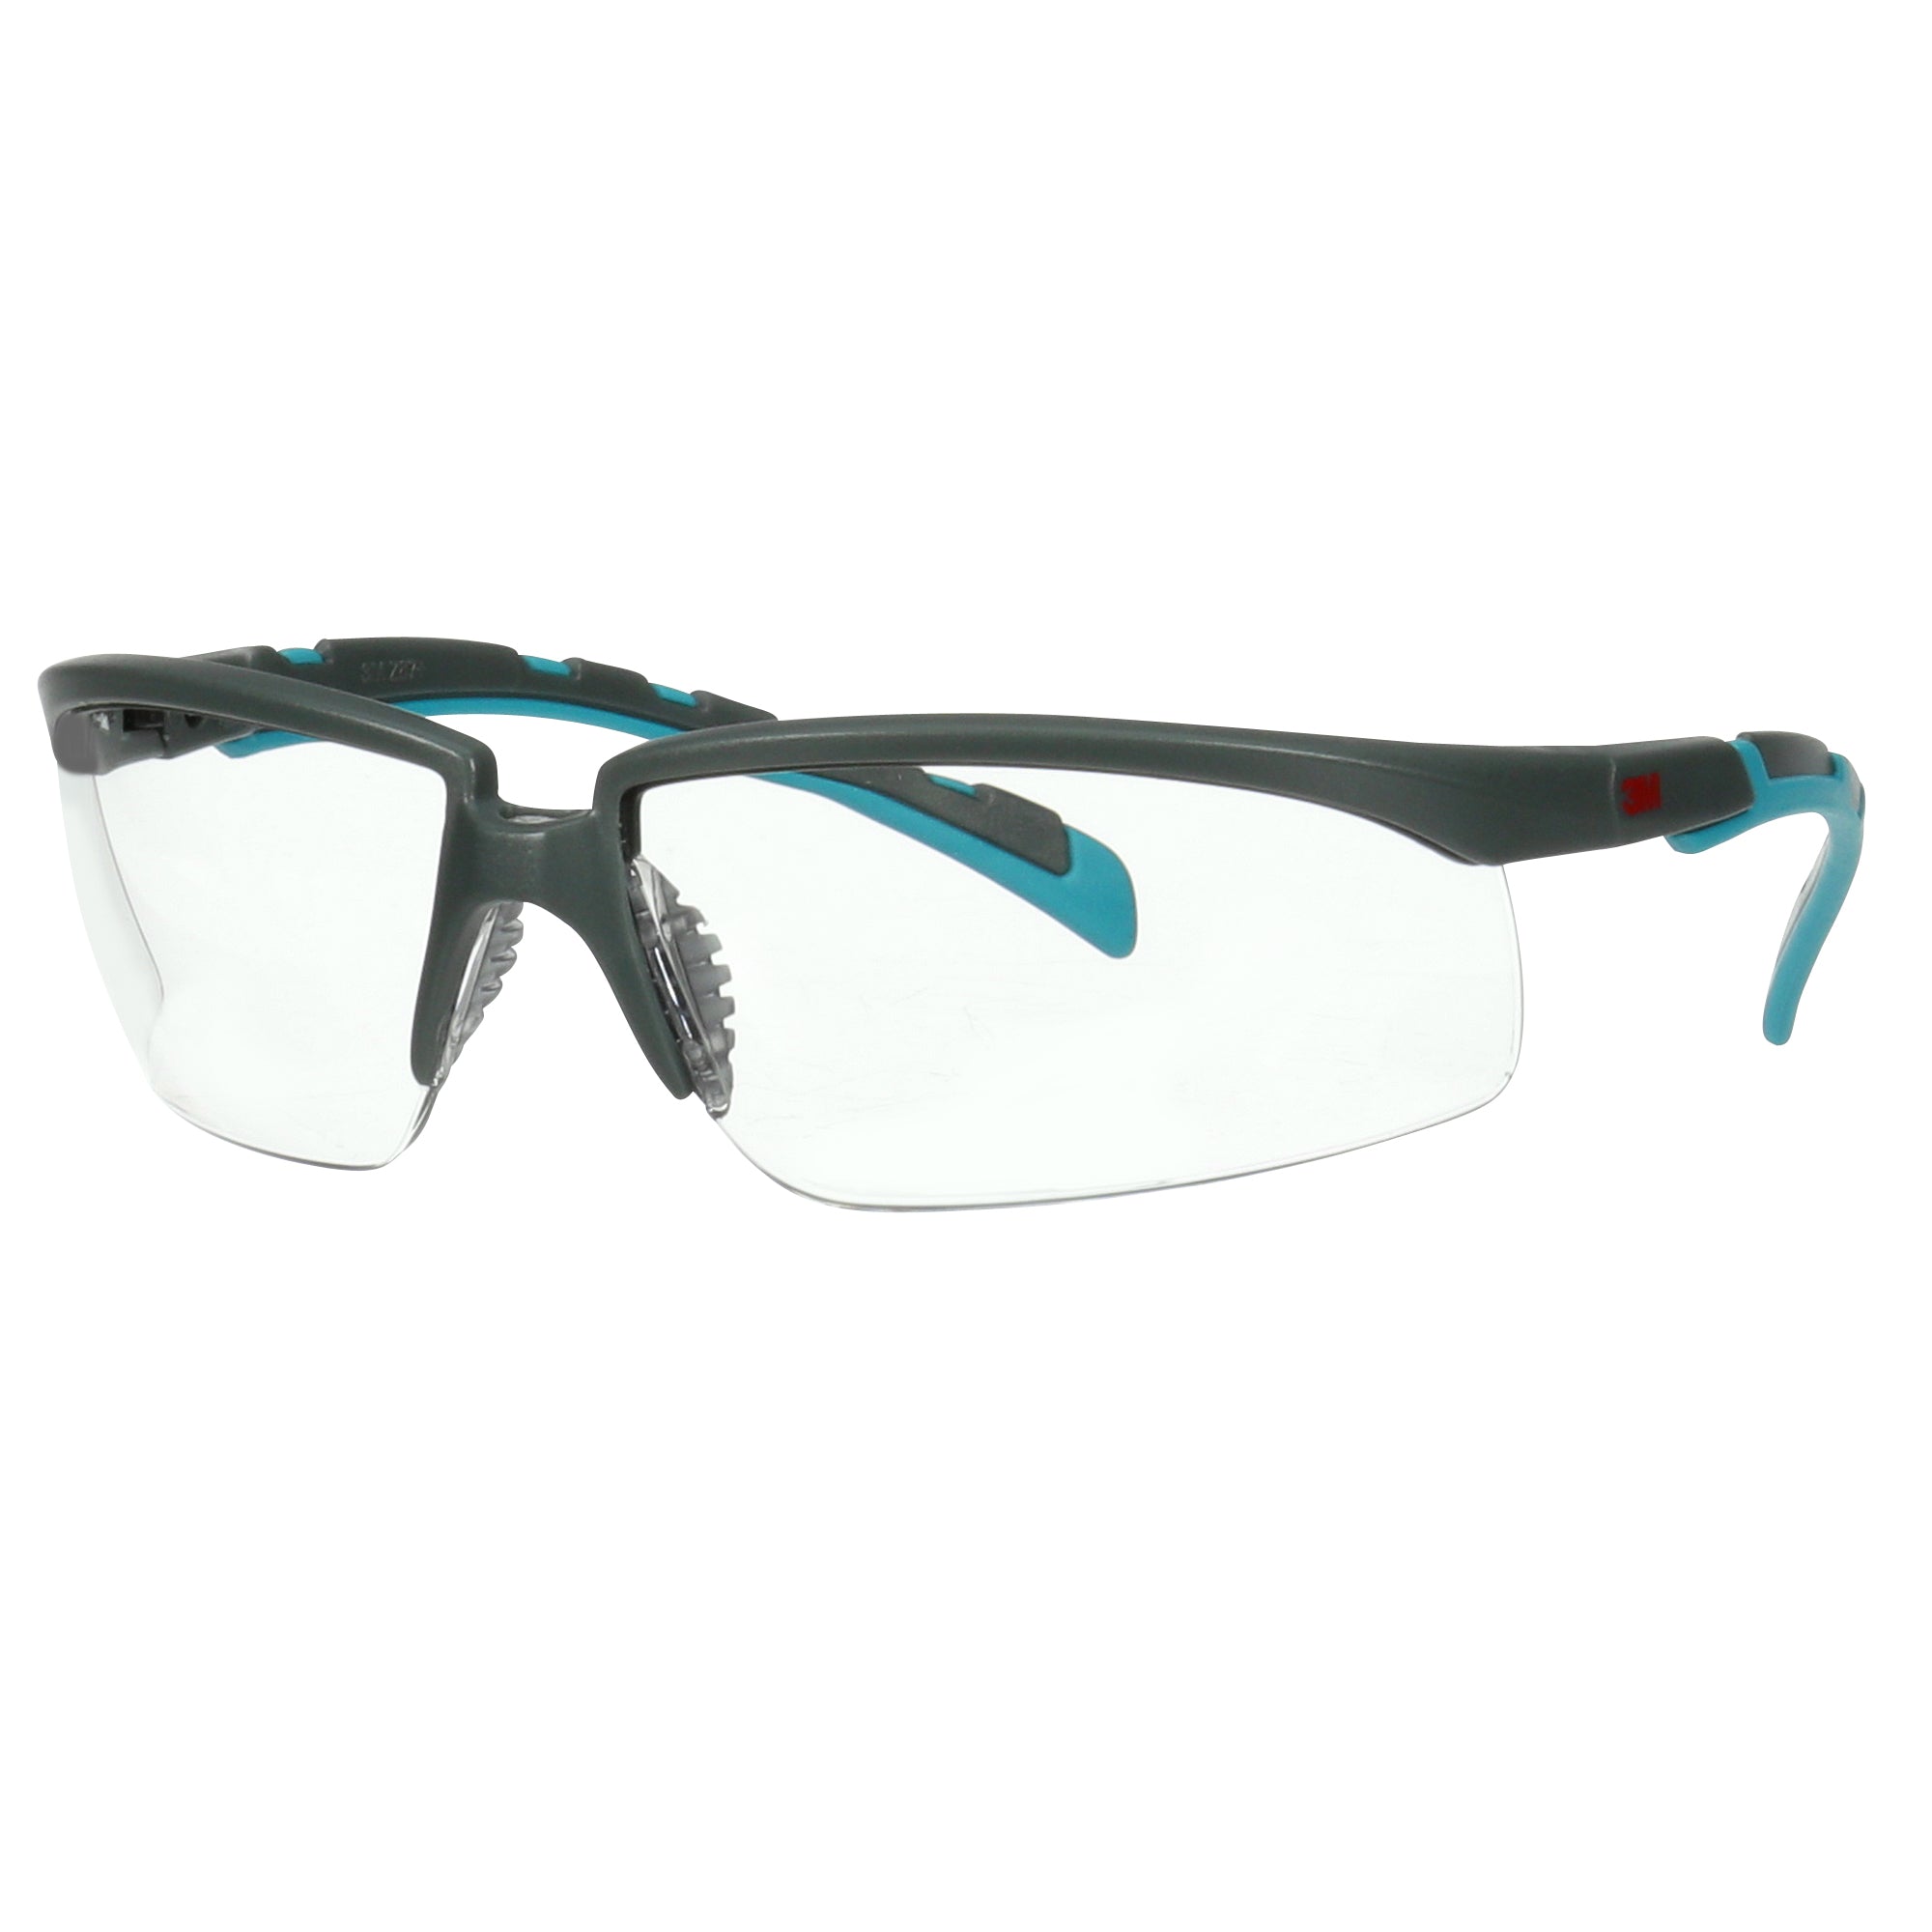 3m-occhiali-sicurezza-solus-2000-lenti-trasparenti-anti-graffio-s2001af-blu